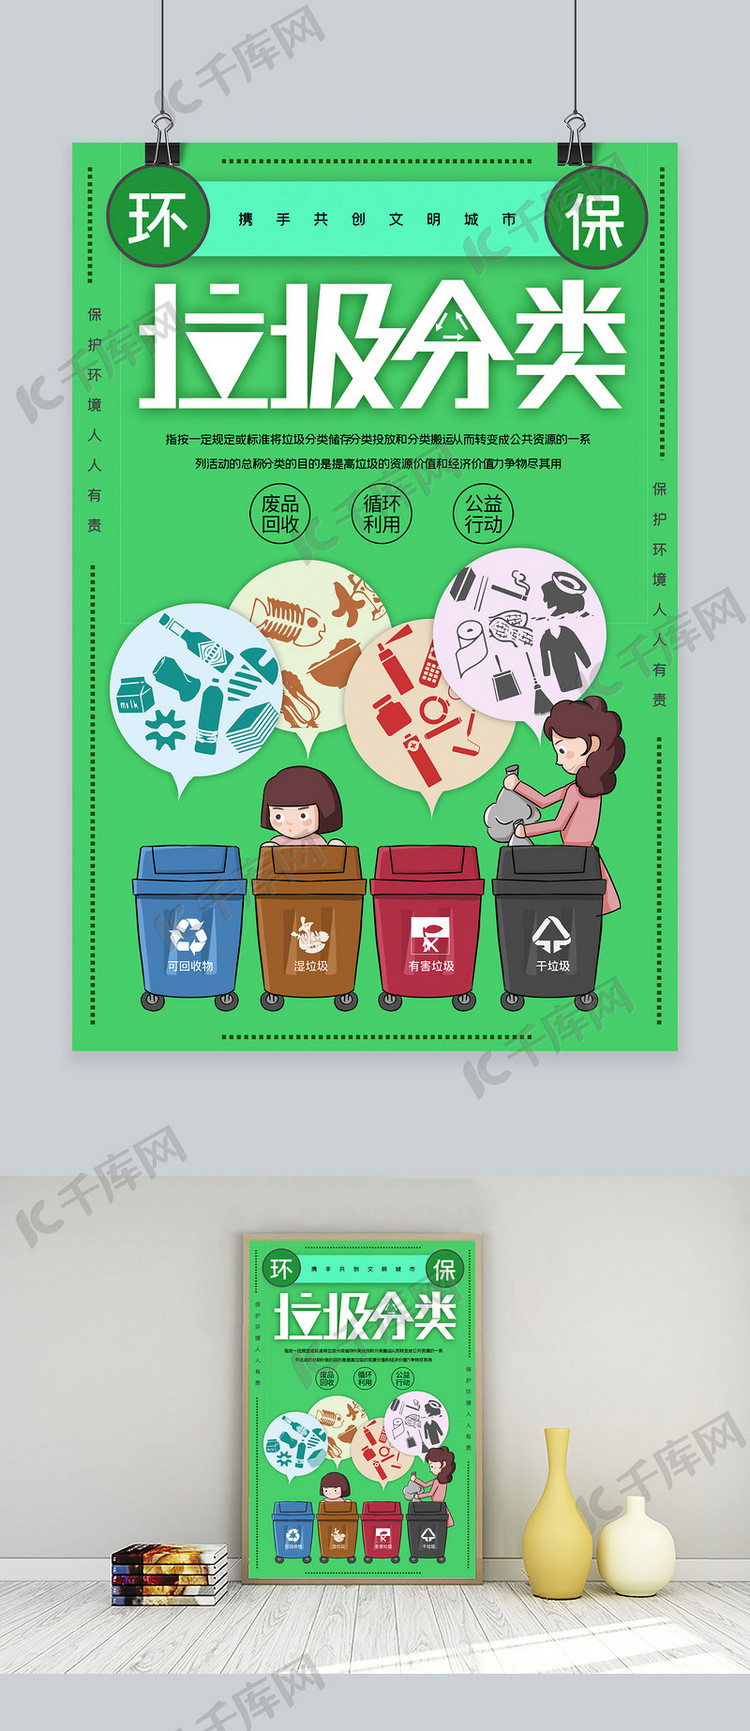 垃圾分类环保创意合成分类垃圾环境保护公益海报